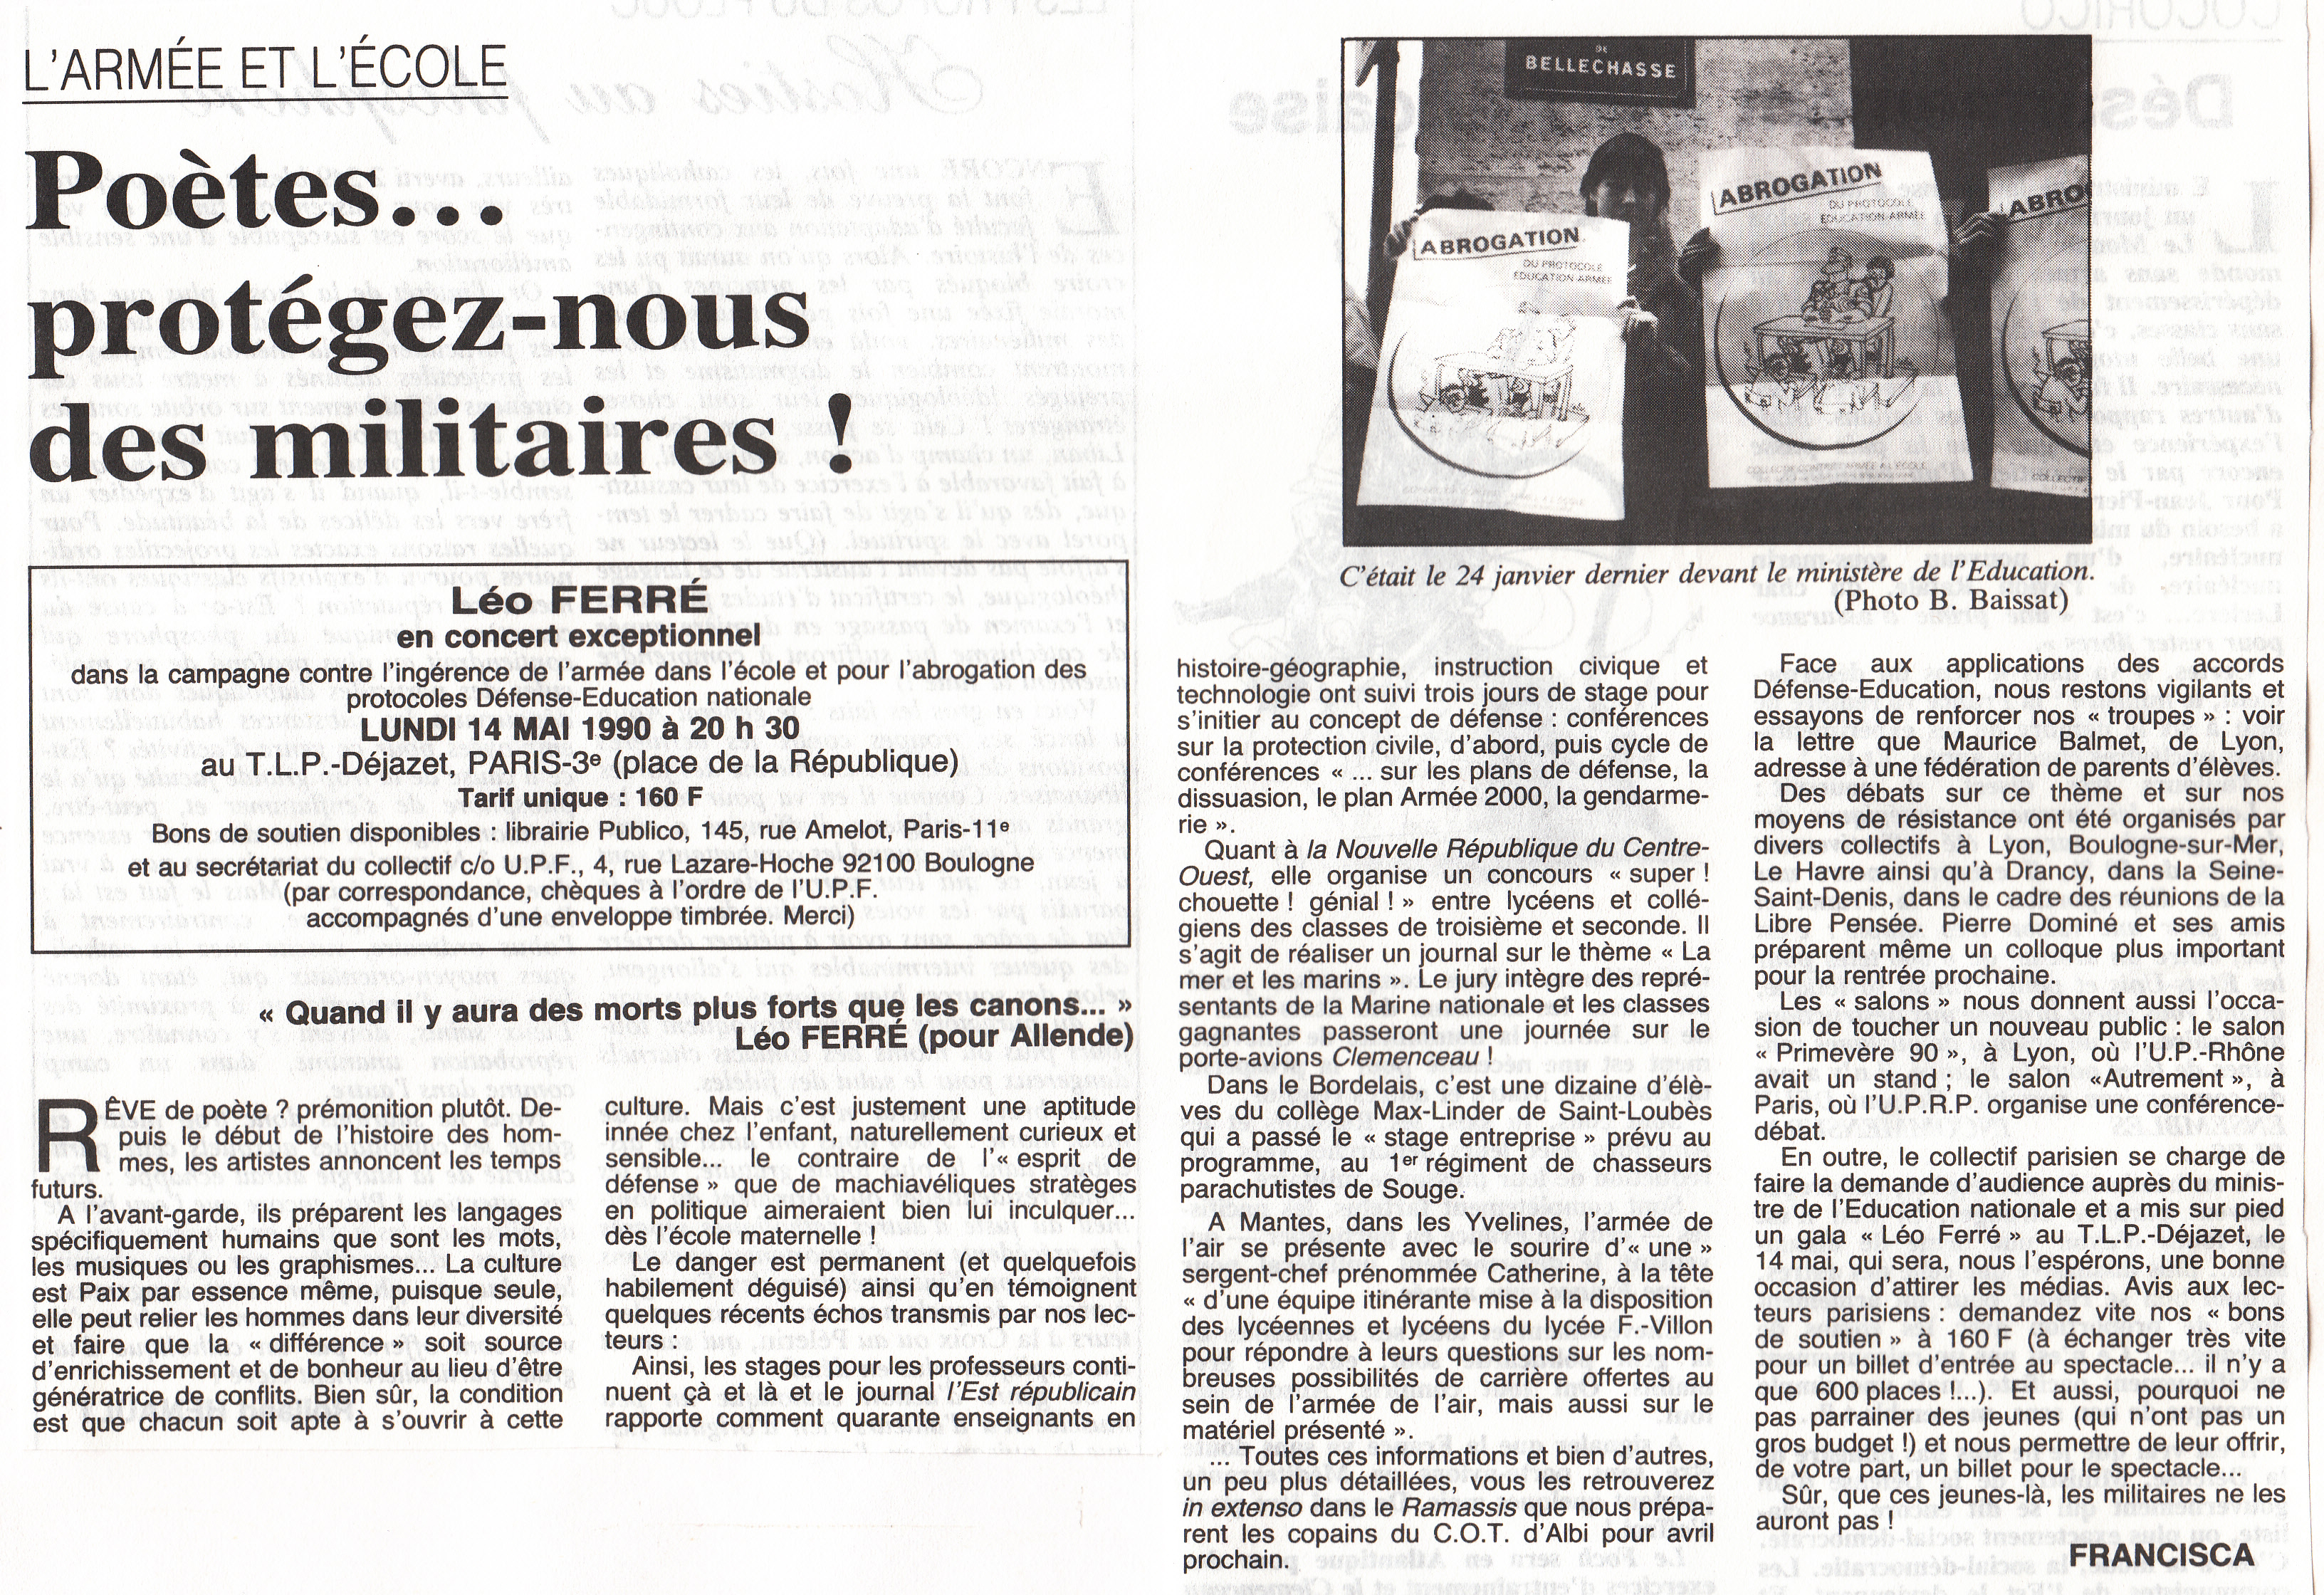 Léo Ferré - Union pacifiste n°263, mensuel d'avril 1990